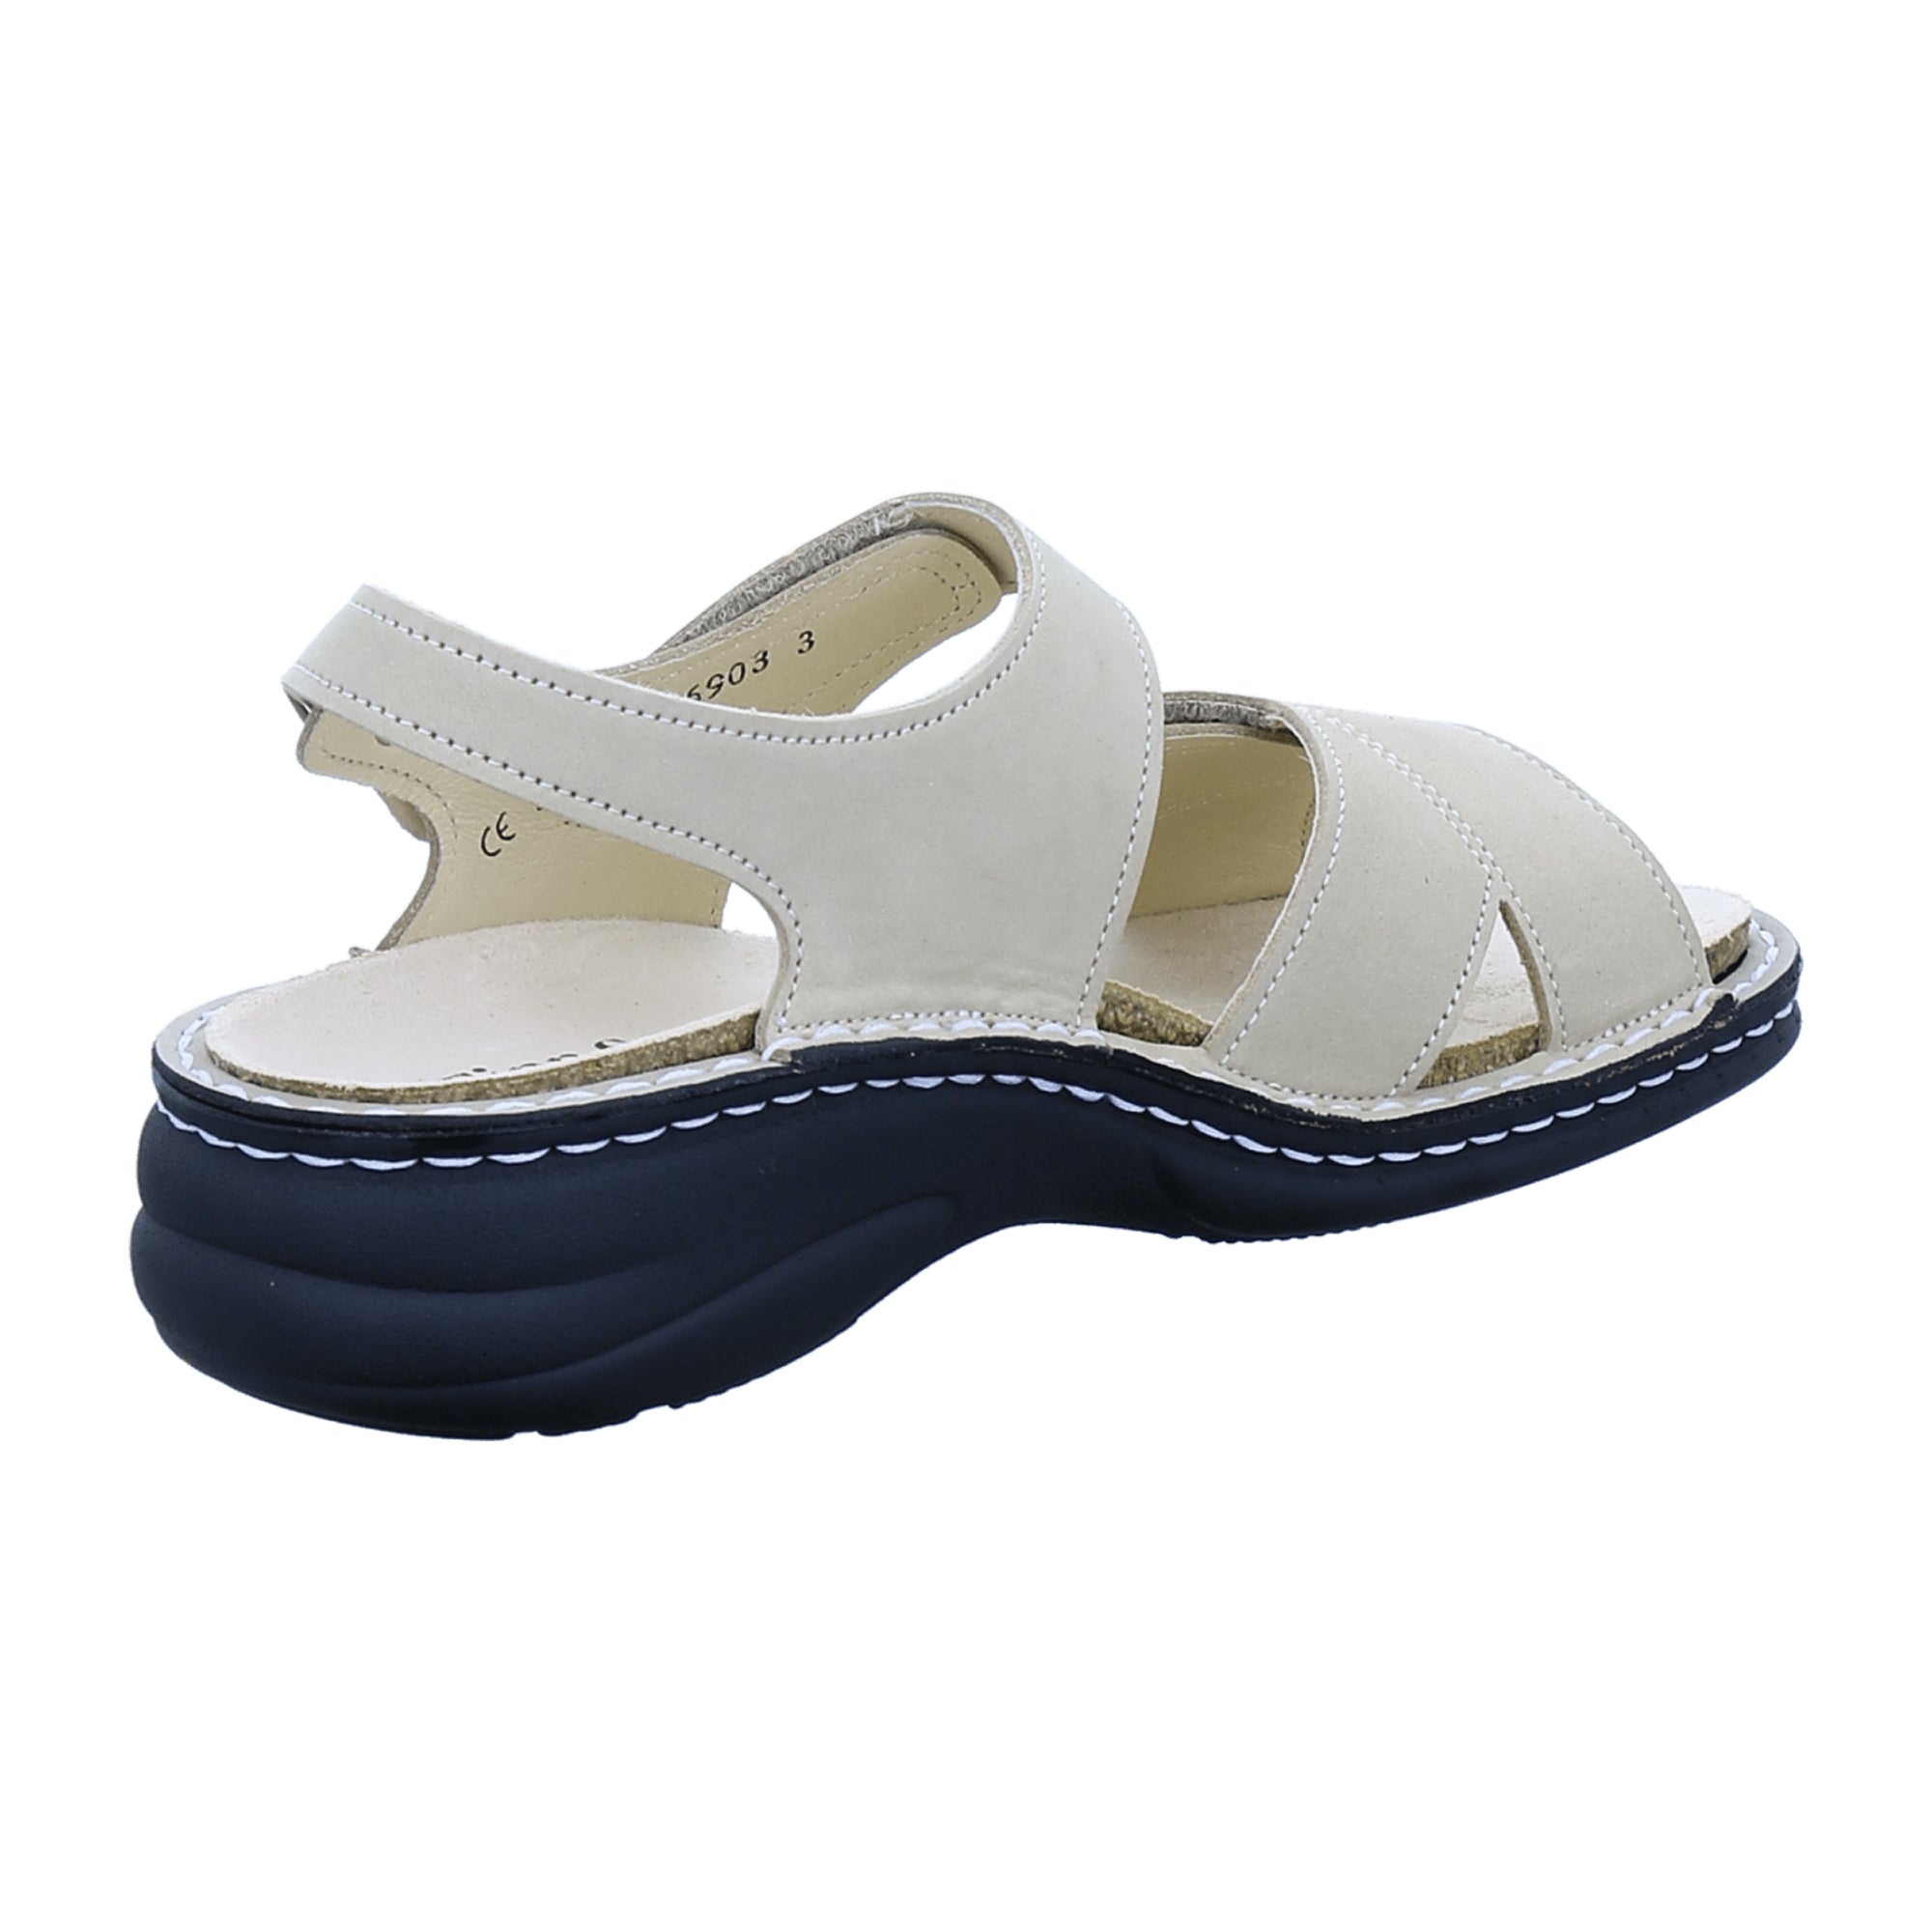 Finn Comfort Linosa Women's Sandals - Ivory Nubuck Adjustable Comfort Sandals, Beige